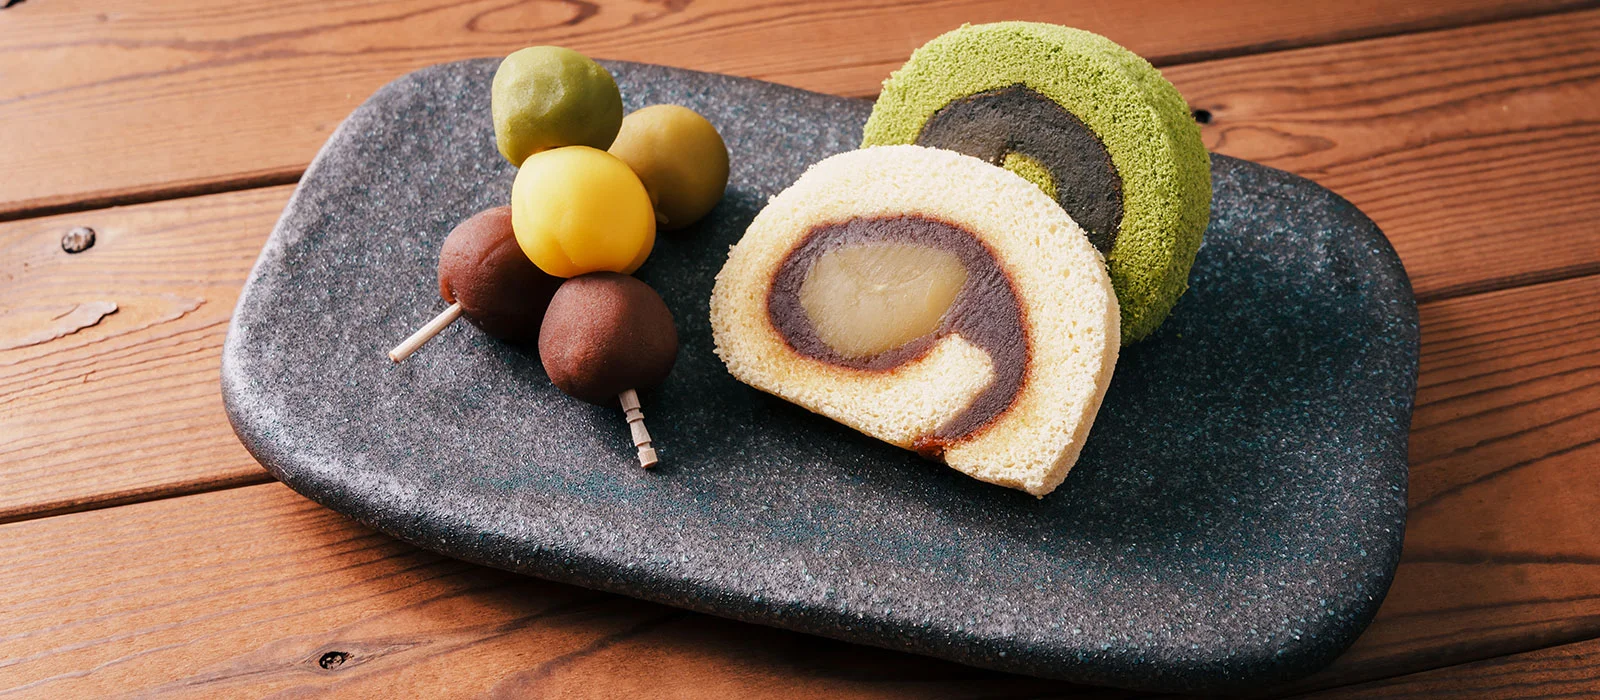 愛媛の伝統菓子「坊っちゃん団子」「タルト」